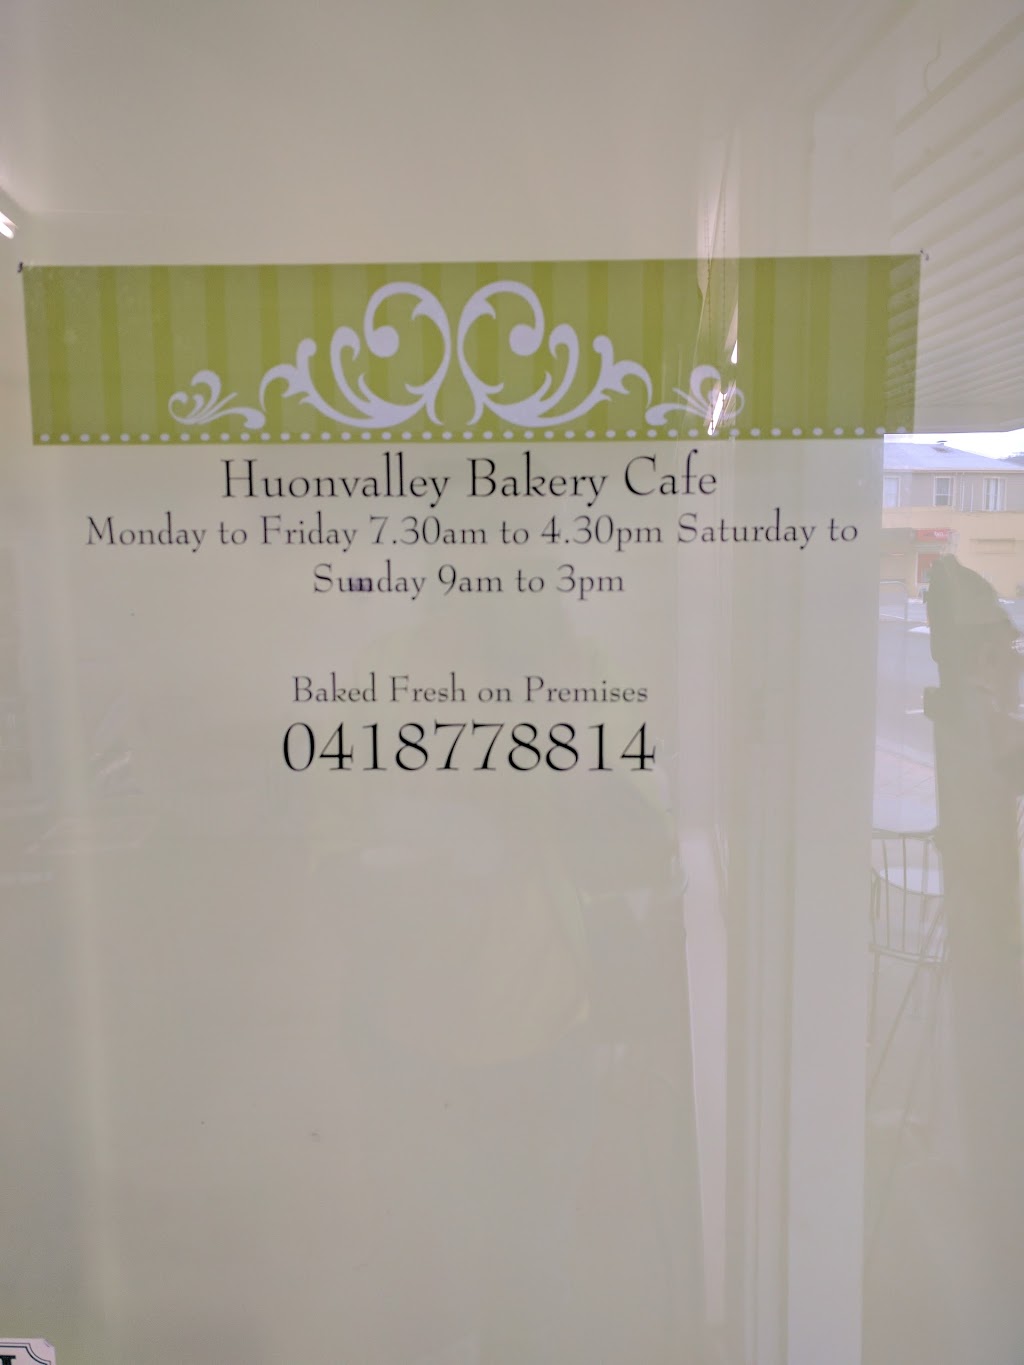 Huonvalley Bakery Cafe | bakery | Shop 1/37 Main St, Huonville TAS 7109, Australia | 0418778814 OR +61 418 778 814